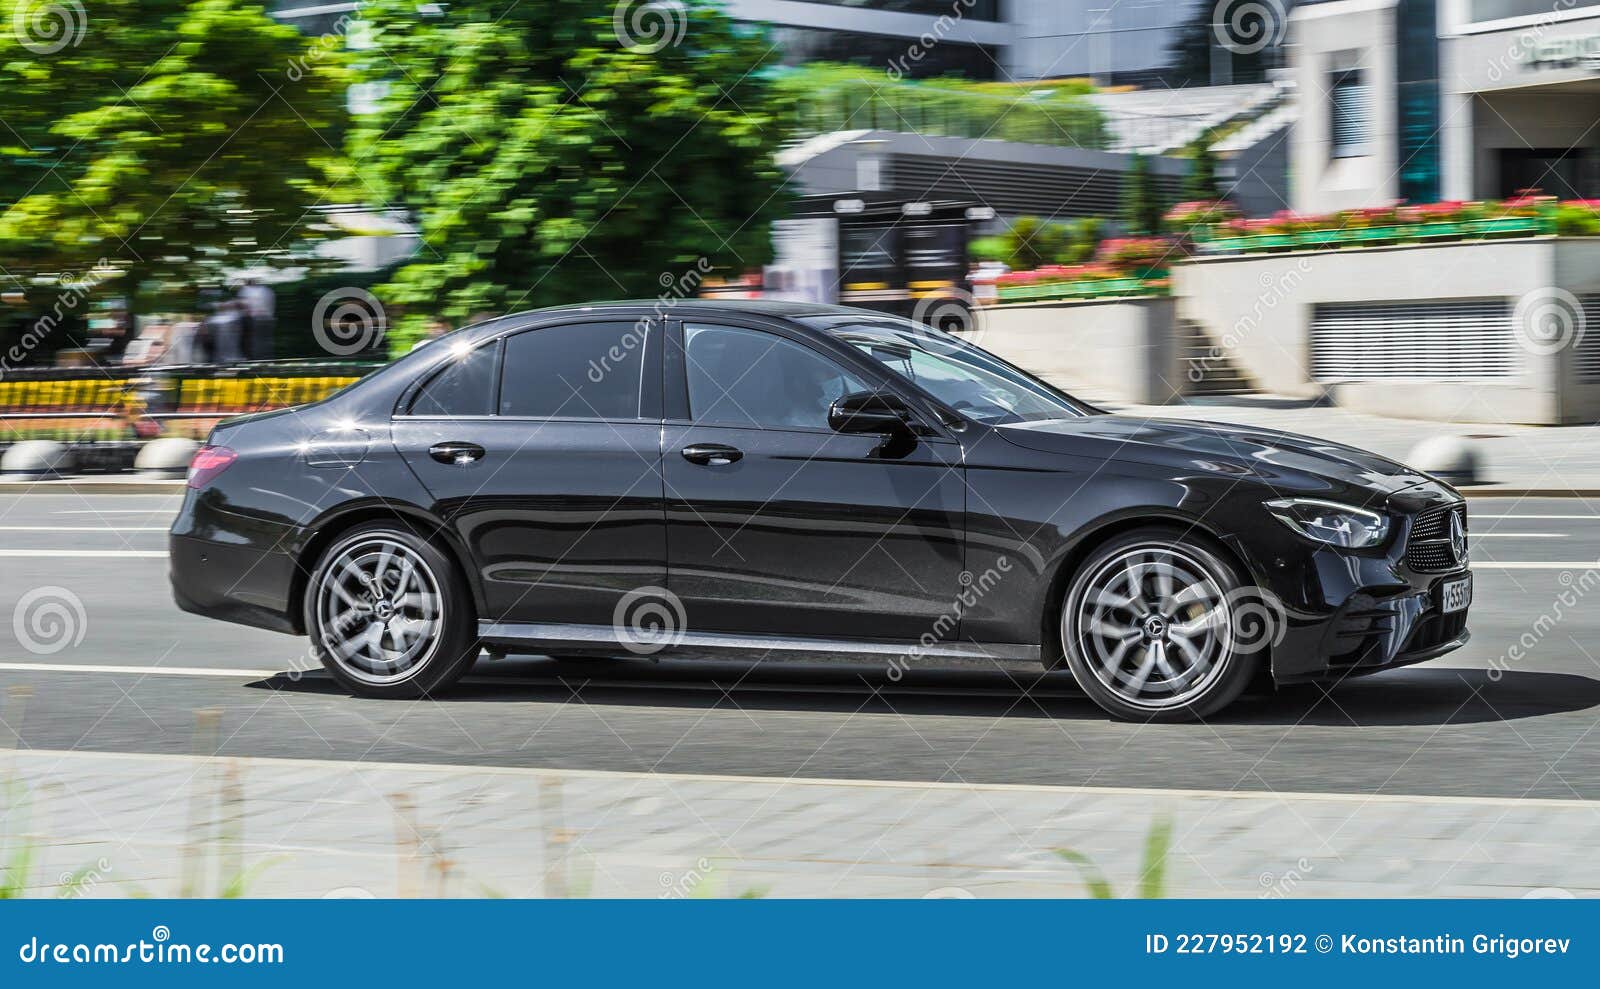 Mercedes von morgen: Ausblick W213 MoPf: So könnte das Facelift